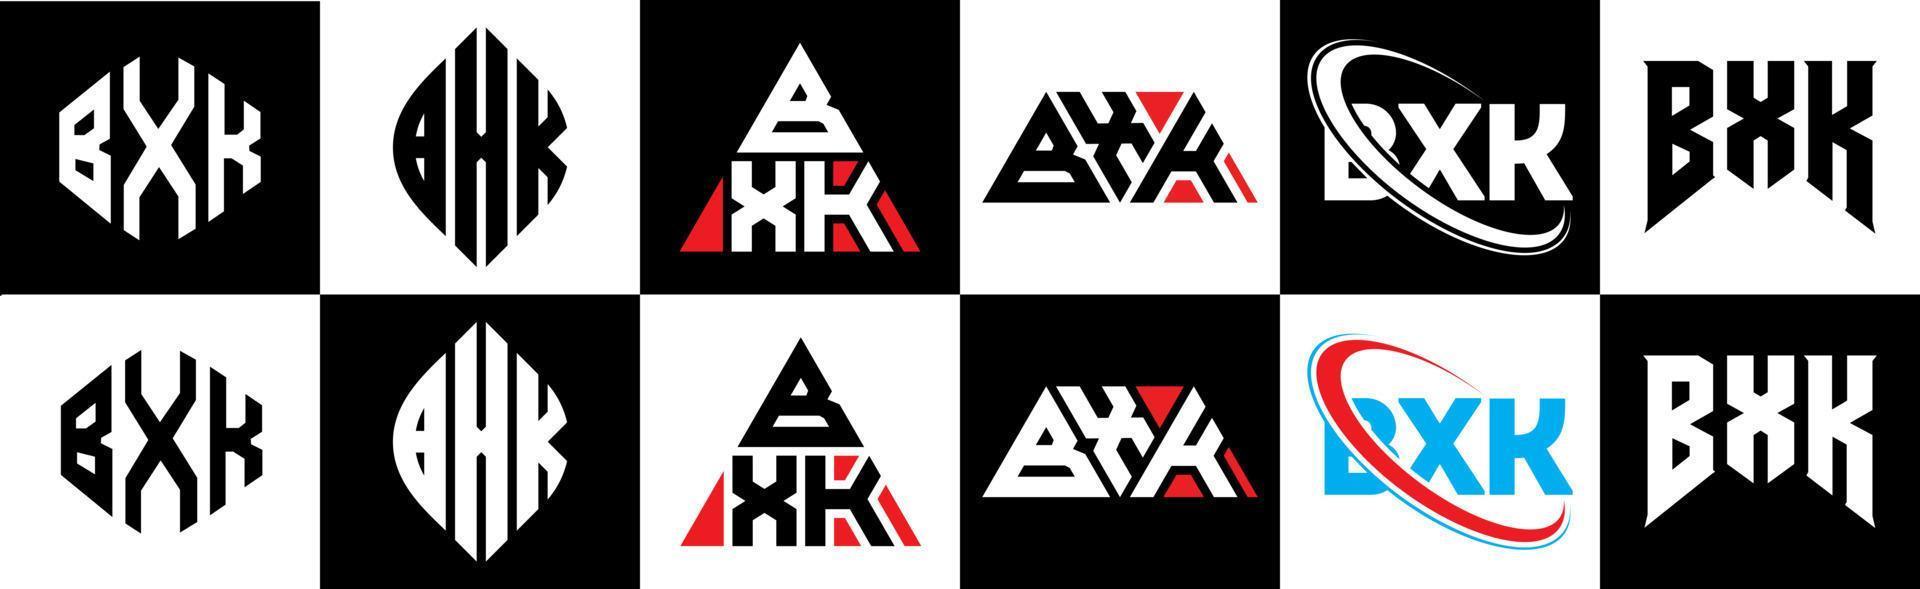 création de logo de lettre bxk en six styles. bxk polygone, cercle, triangle, hexagone, style plat et simple avec logo de lettre de variation de couleur noir et blanc dans un plan de travail. bxk logo minimaliste et classique vecteur